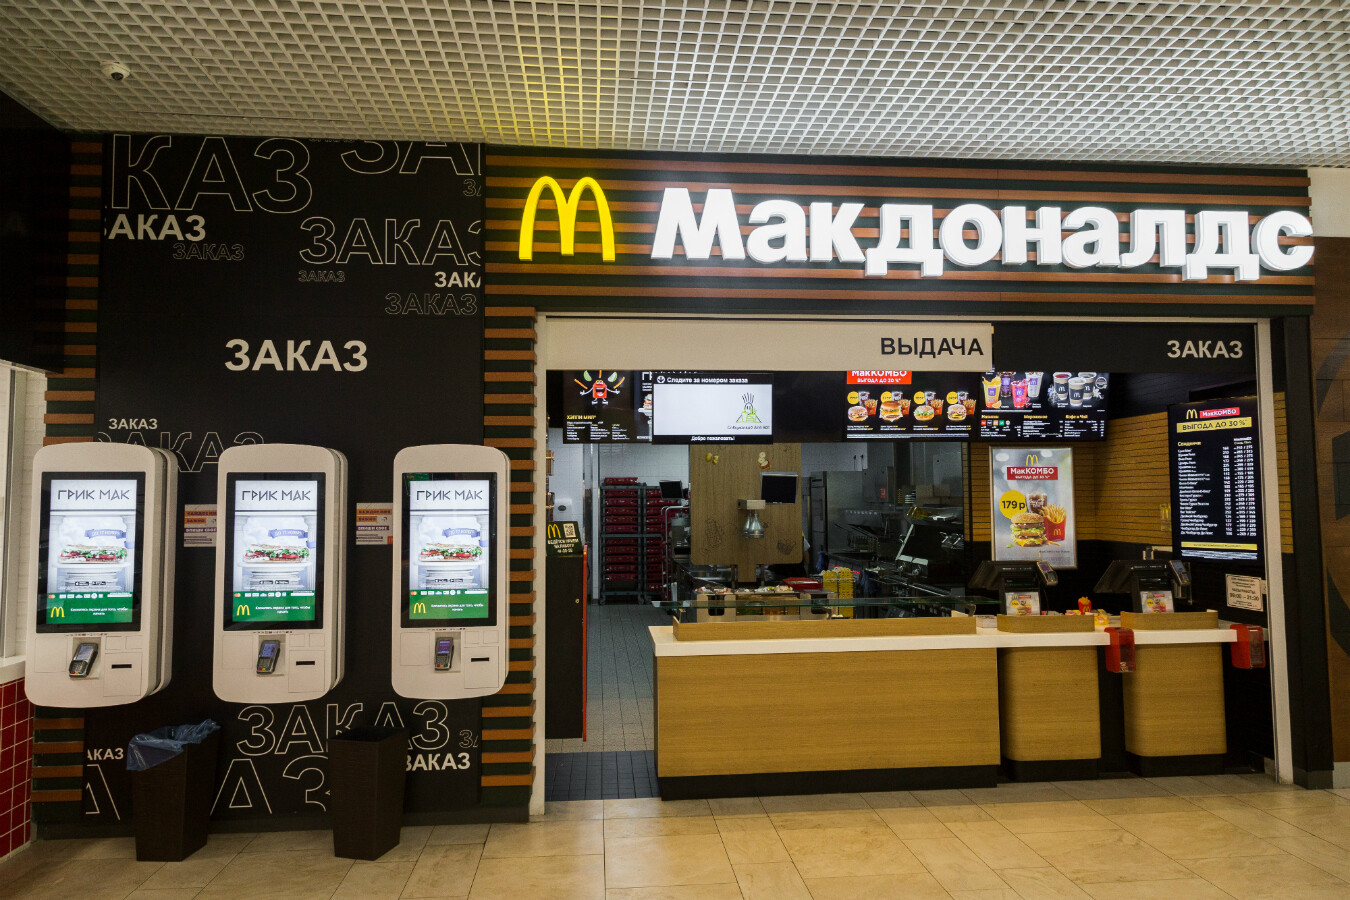 Фастфуд после «Макдональдса»: как изменился рынок ресторанов быстрого питания? 